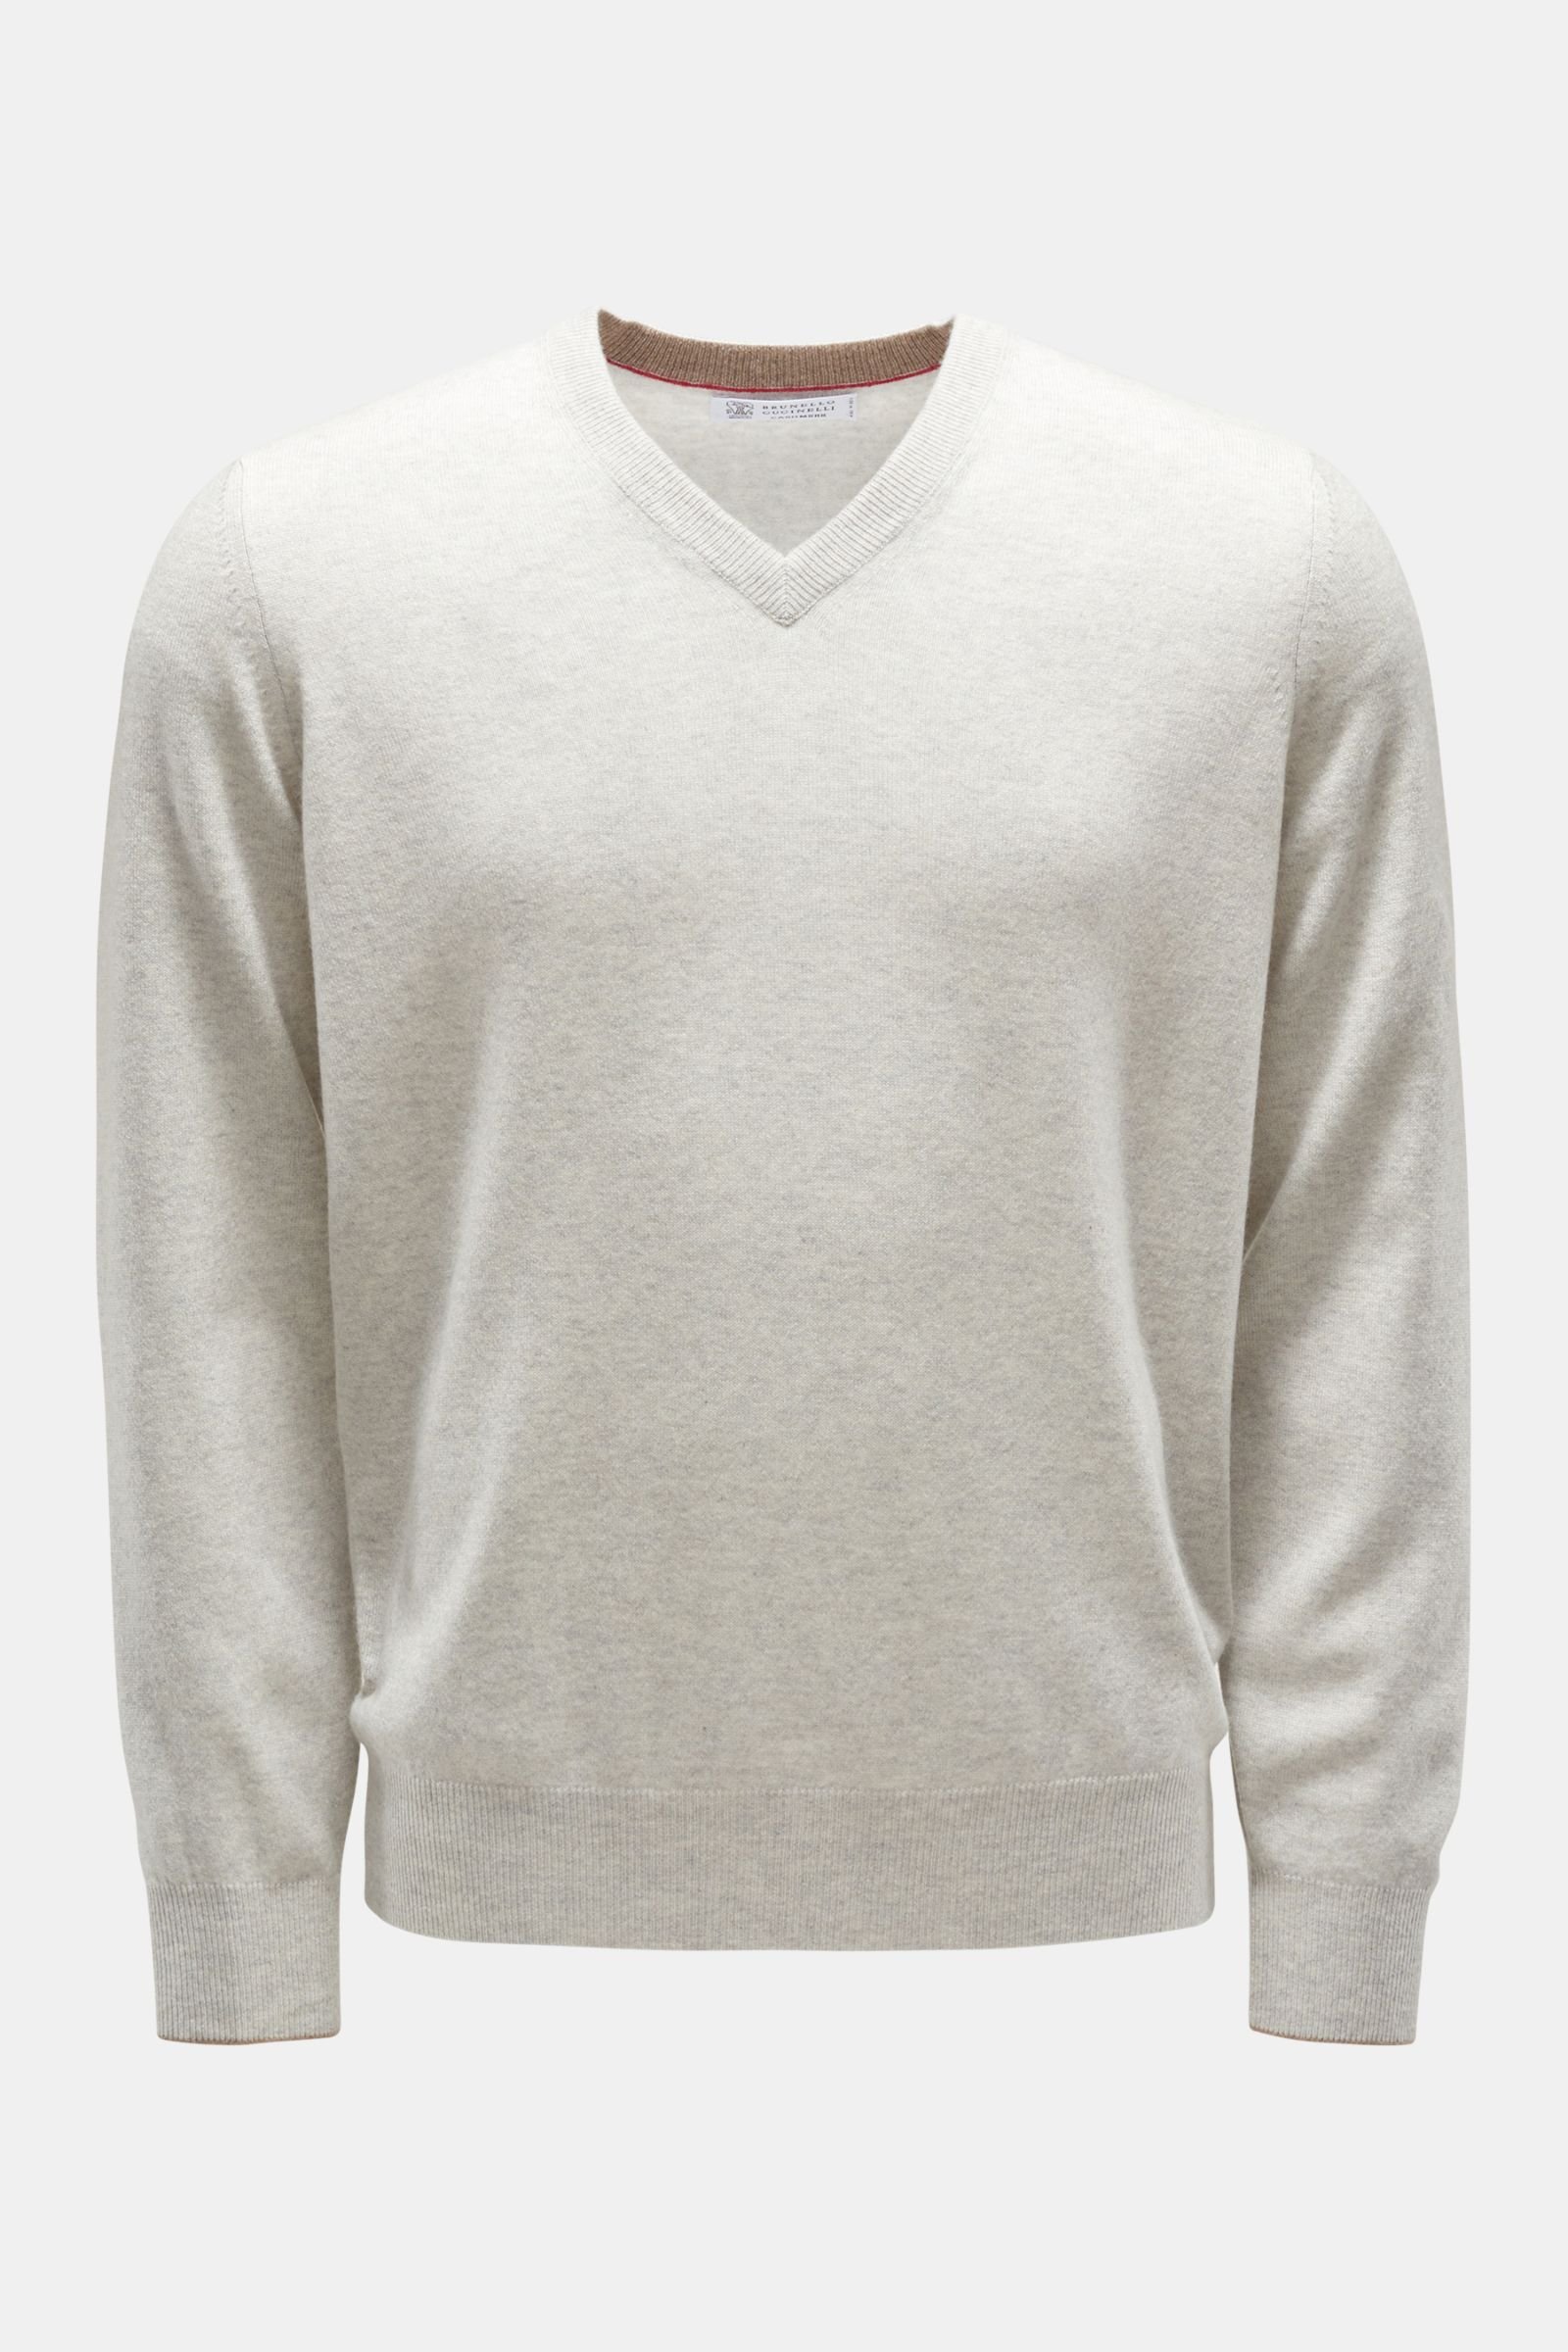 Cashmere V-neck jumper light grey